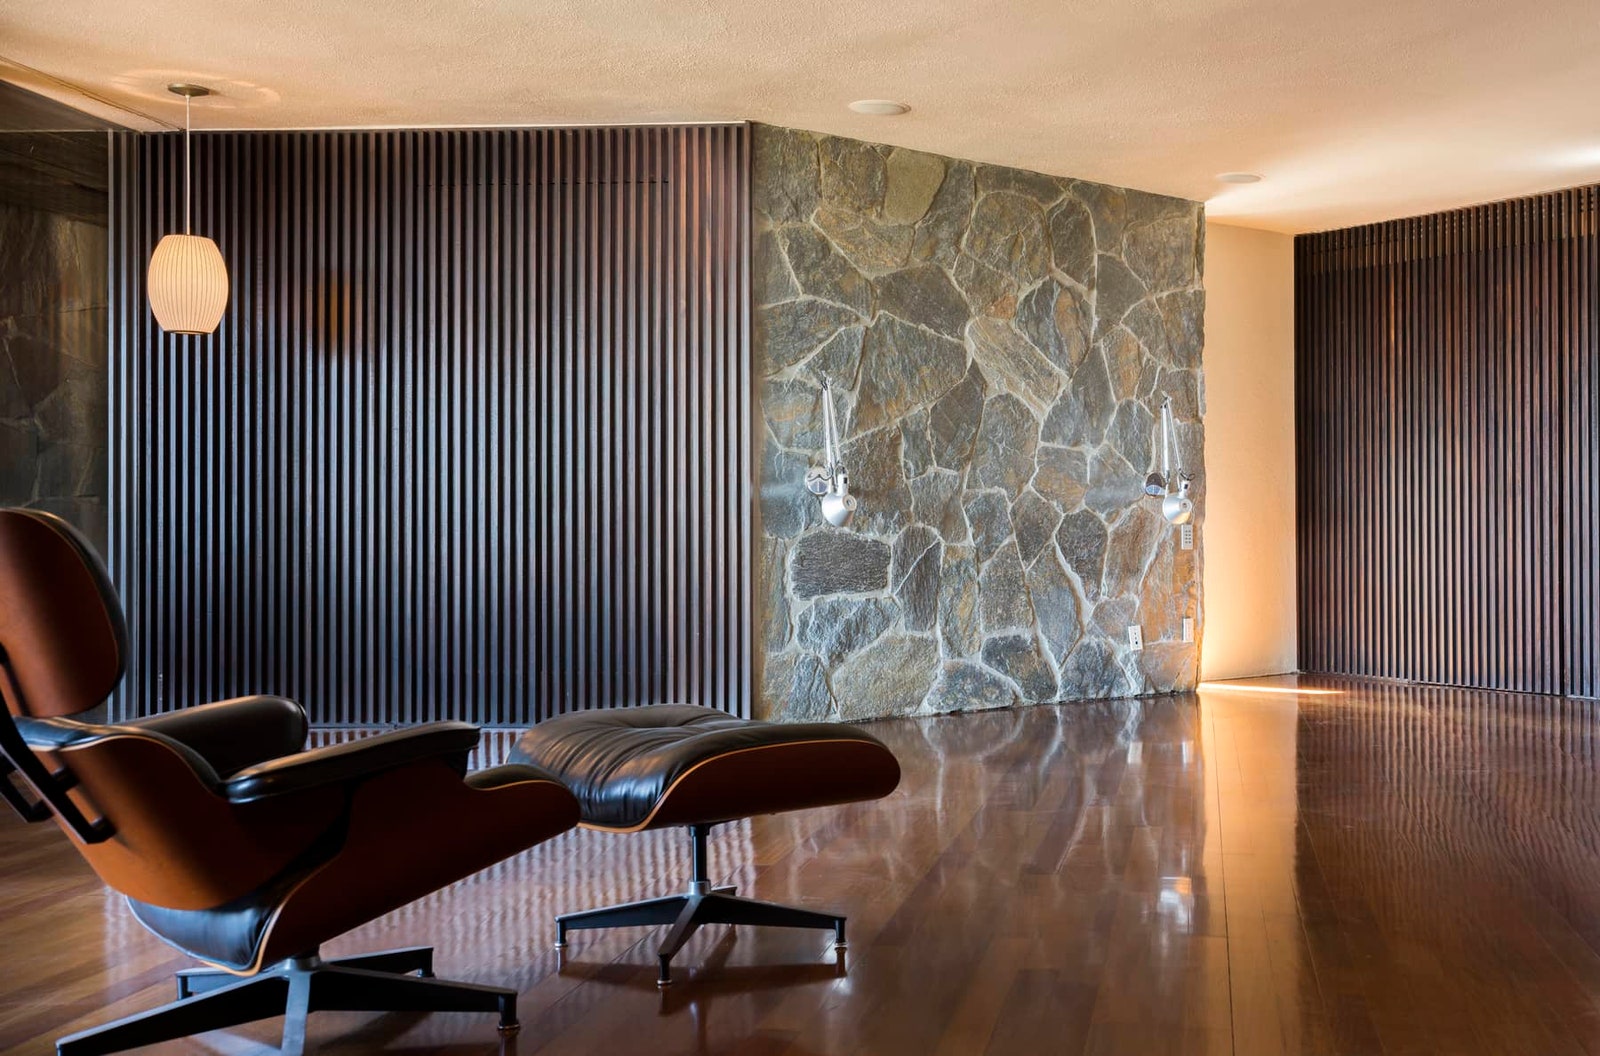 Дом по проекту Джона Лотнера в ЛосАнджелесе выставили на продажу